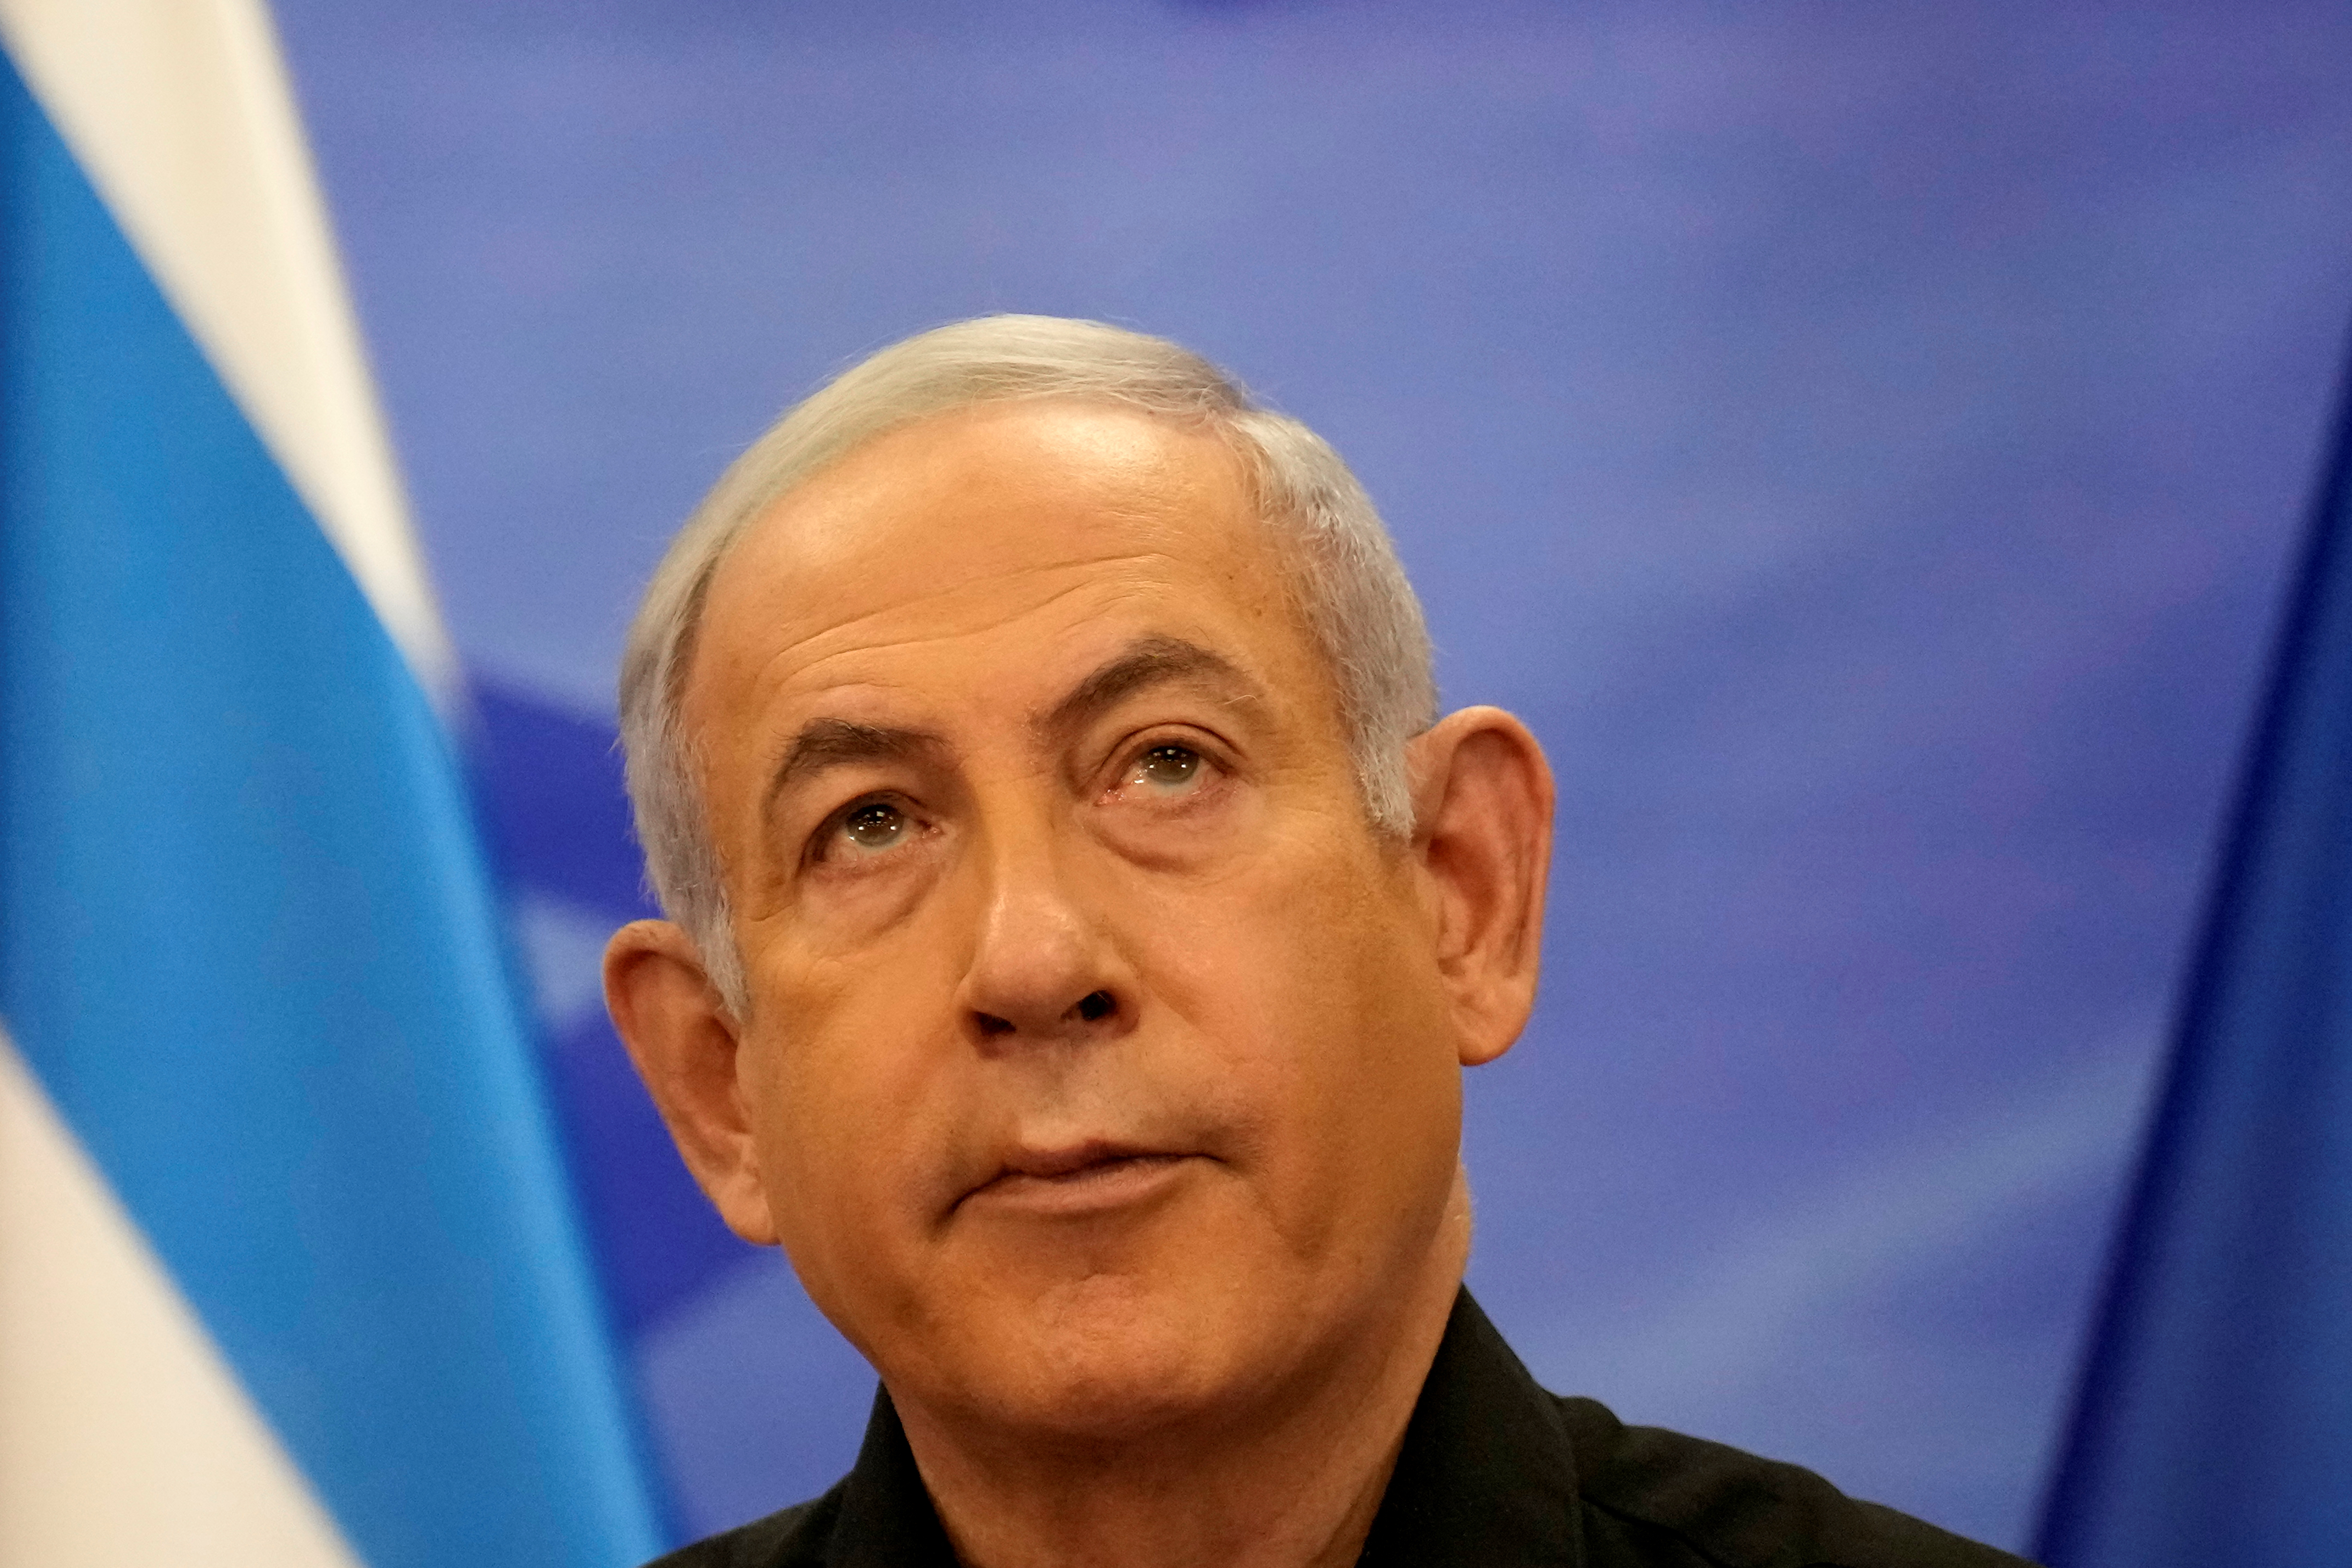 イスラエル首相「戦争第2段階」、ガザ地上作戦展開 人質解放目標 - ロイター (Reuters Japan)